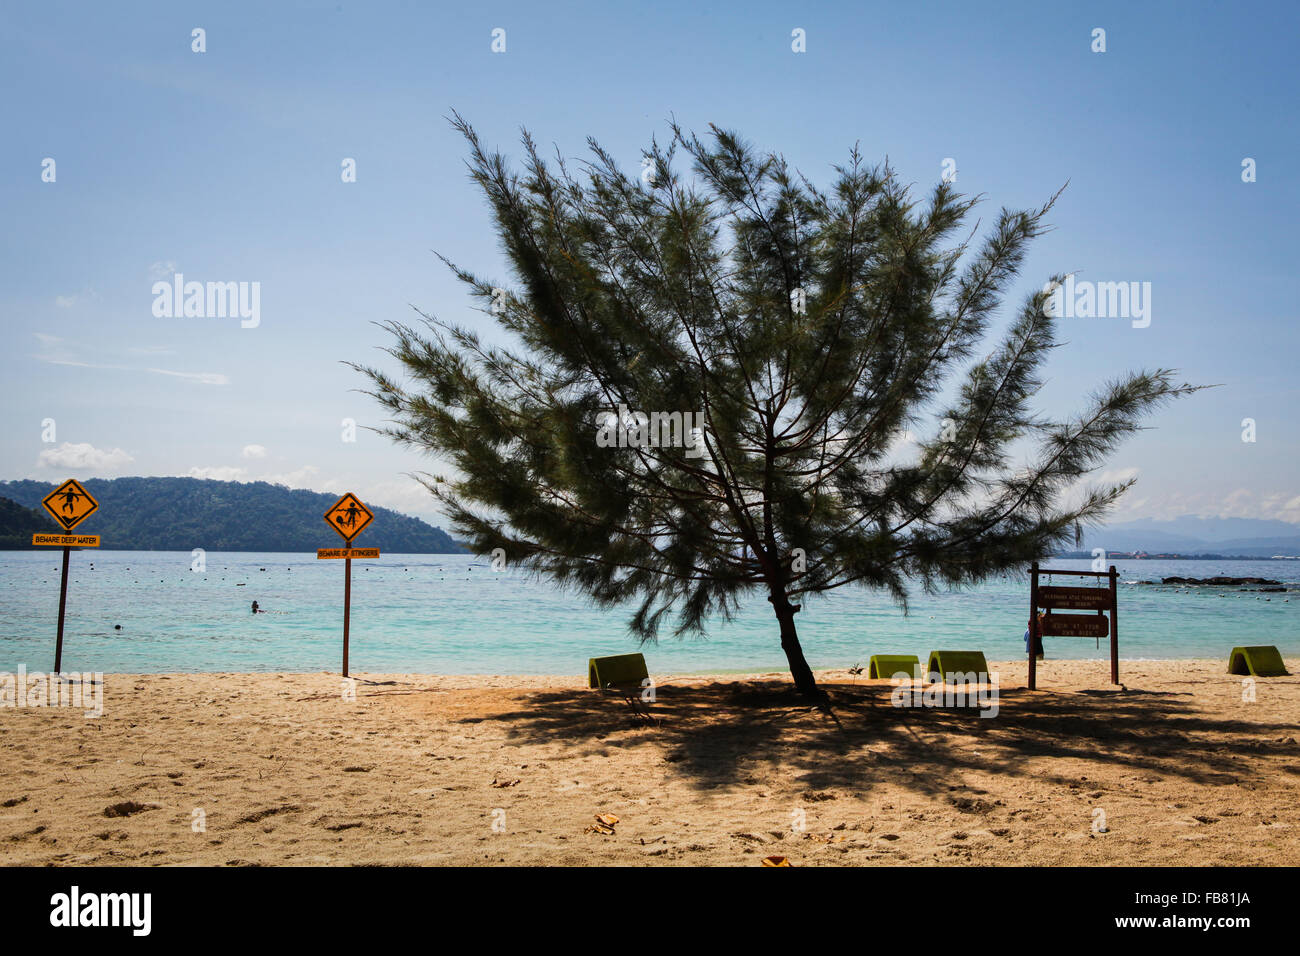 Un arbre casuarina et une signalisation sur la plage de sable tropical de Pulau SAPI (île SAPI), une partie du parc Tunku Abdul Rahman à Sabah, en Malaisie. Banque D'Images